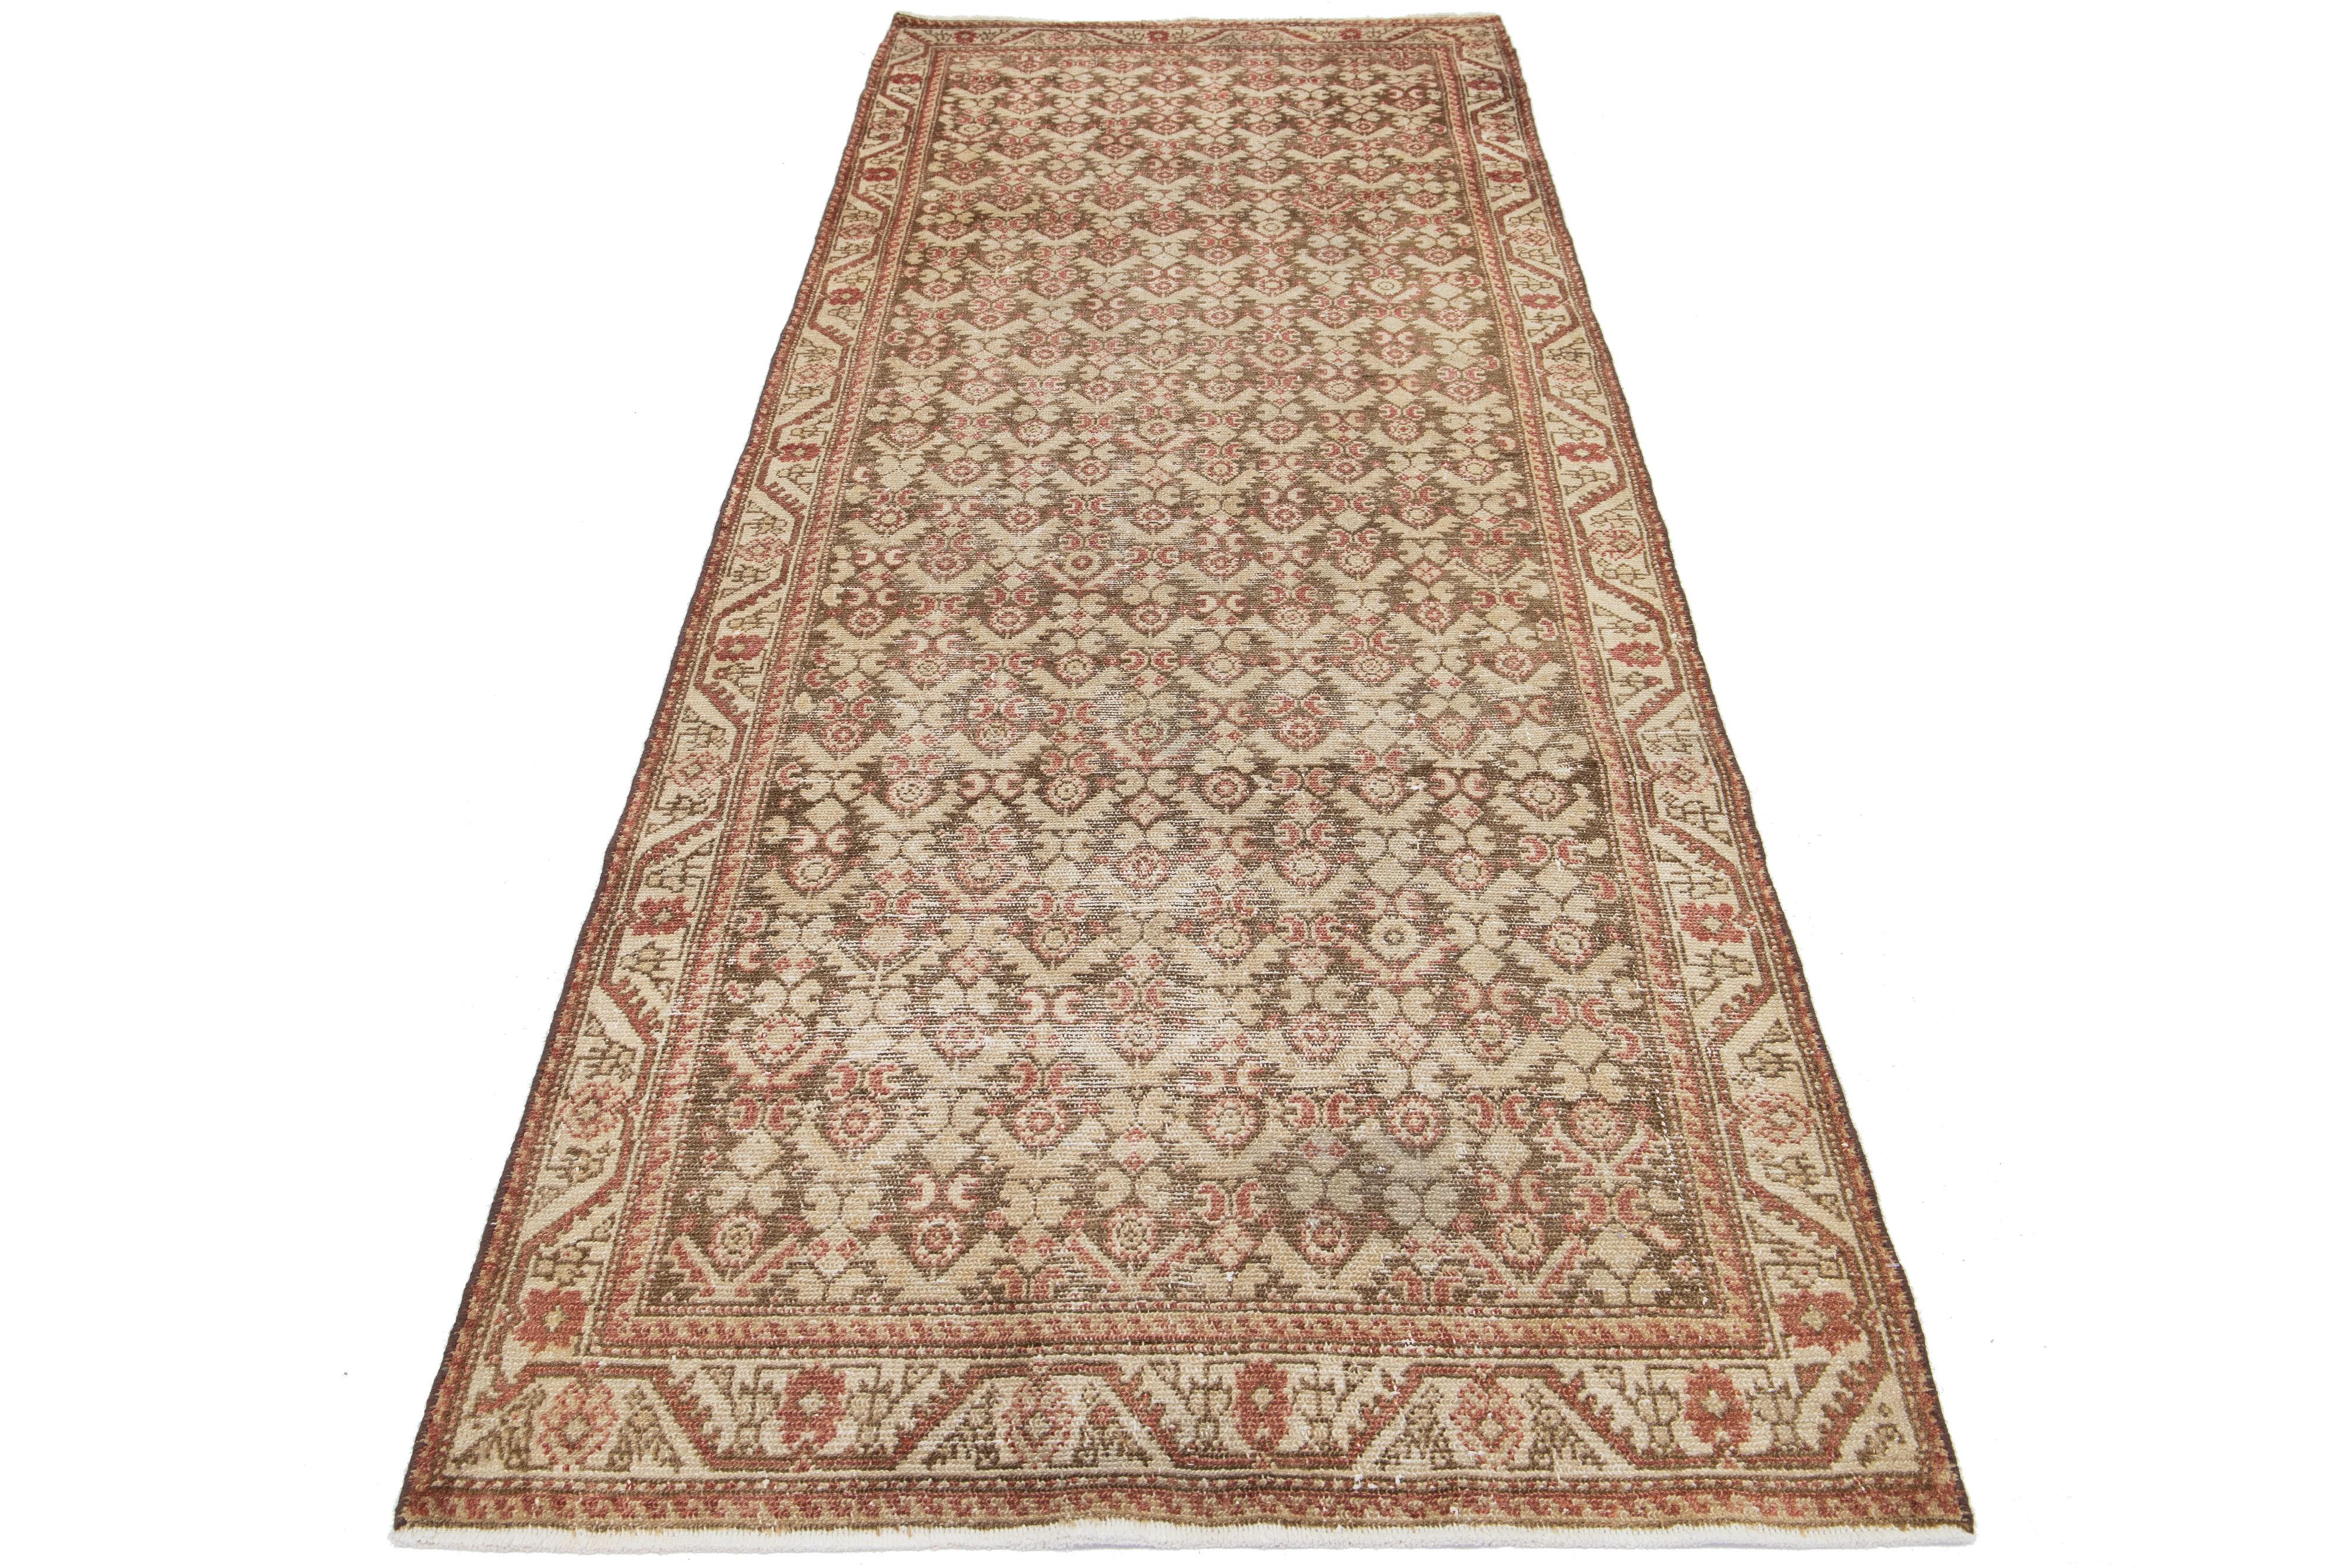 Ancien tapis persan en laine de Malayer à motifs rouille et beige sur fond marron.

Ce tapis mesure 3'5' x 9'3